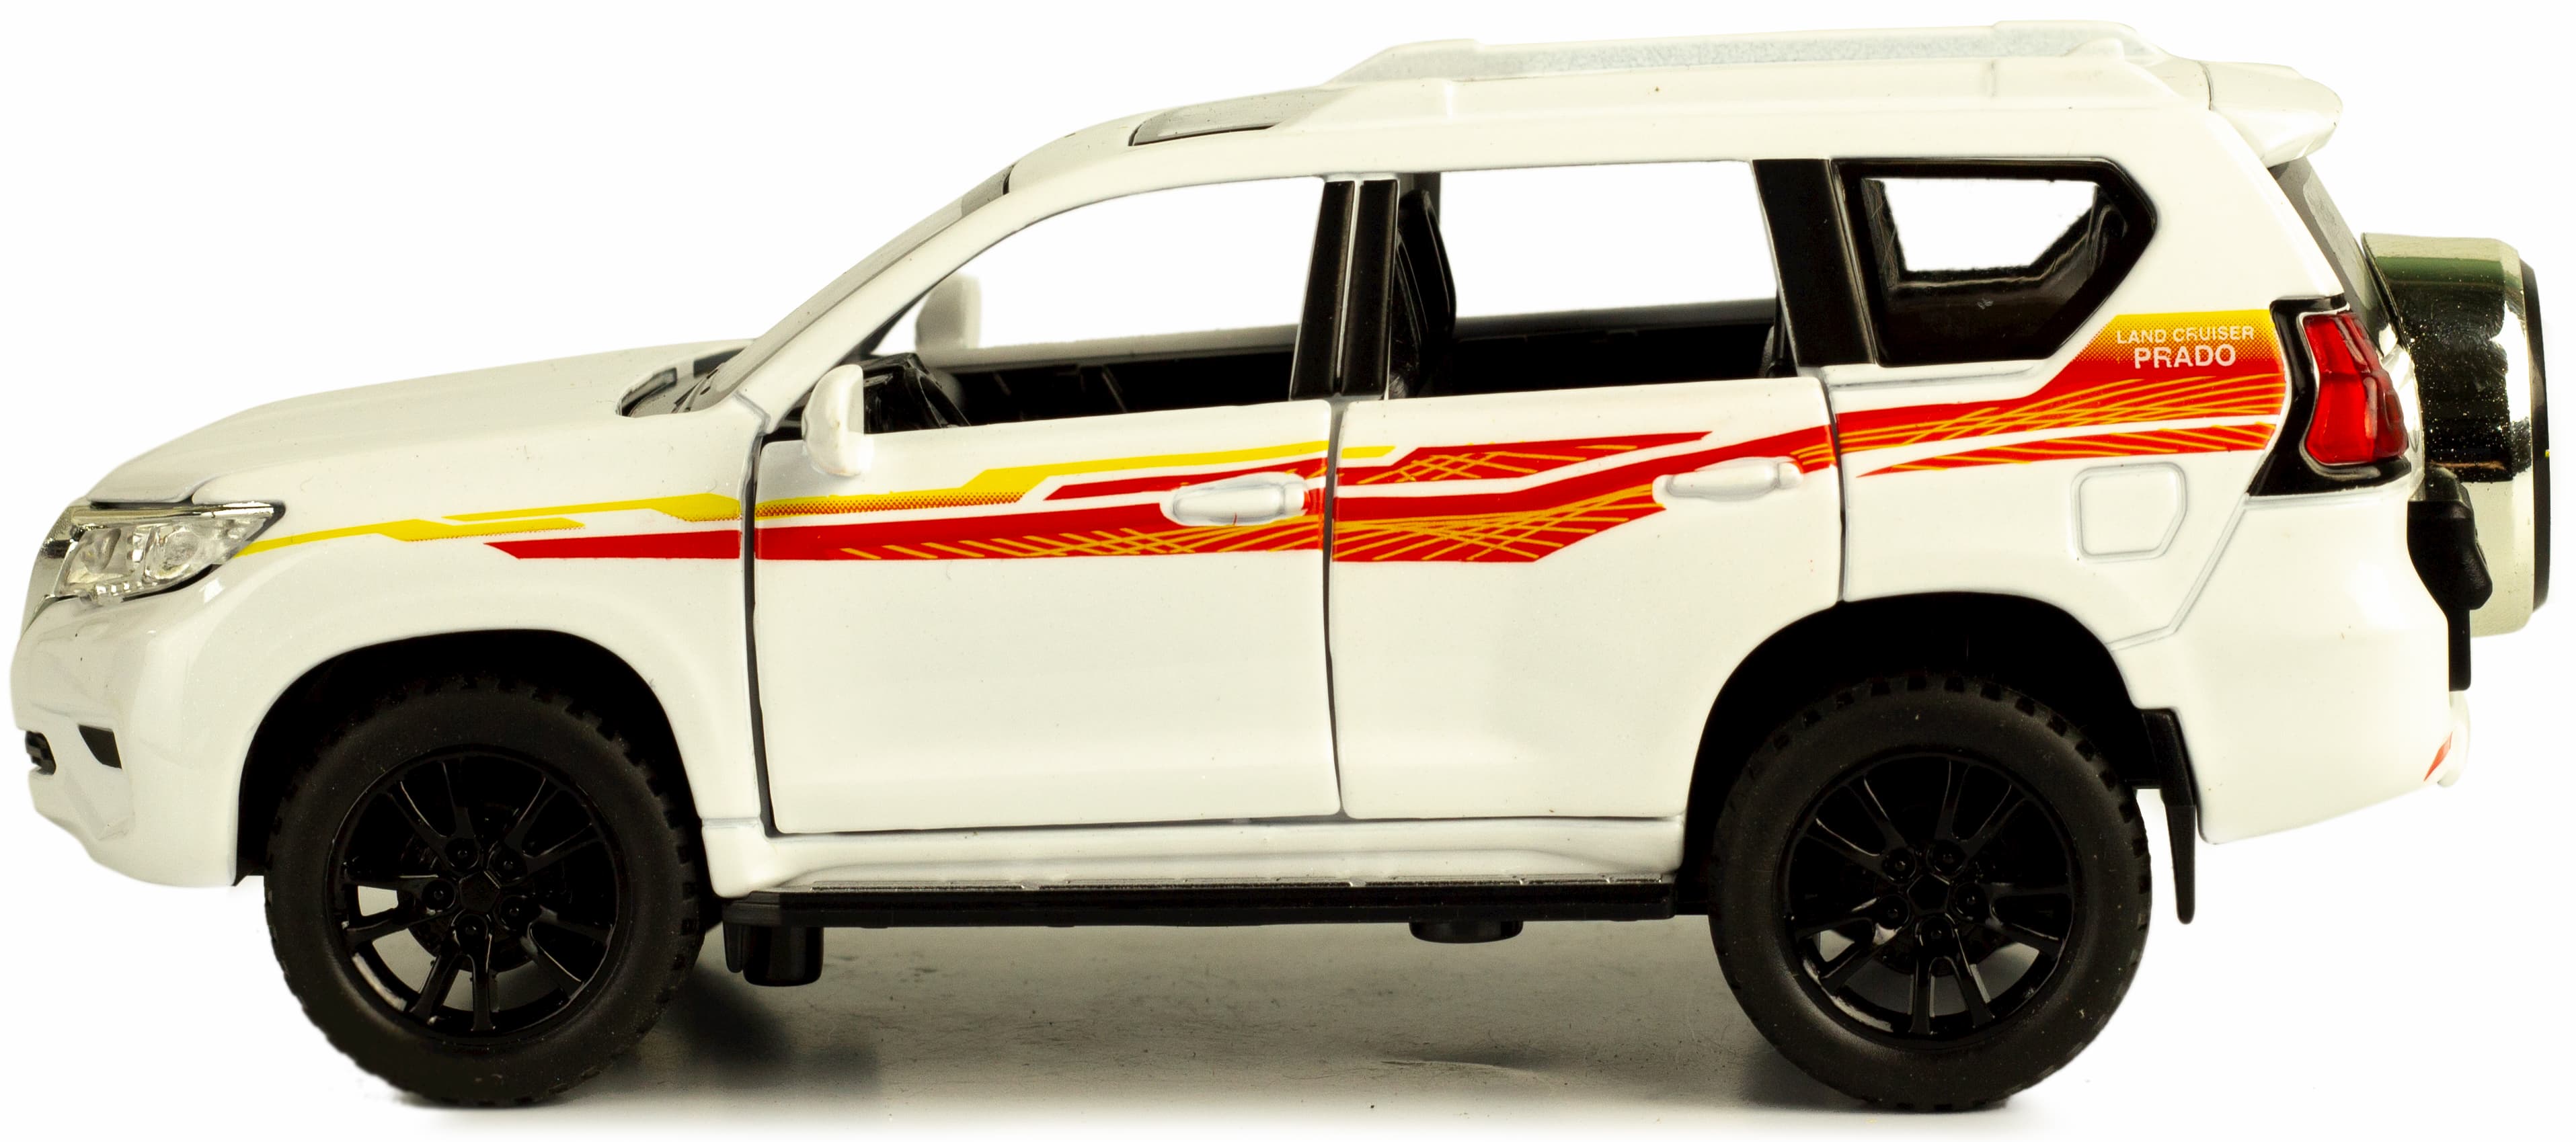 Металлическая машинка Double Horses 1:32 «Toyota Land Cruiser Prado» 32551, 16.2 см. инерционная, свет, звук / Белый